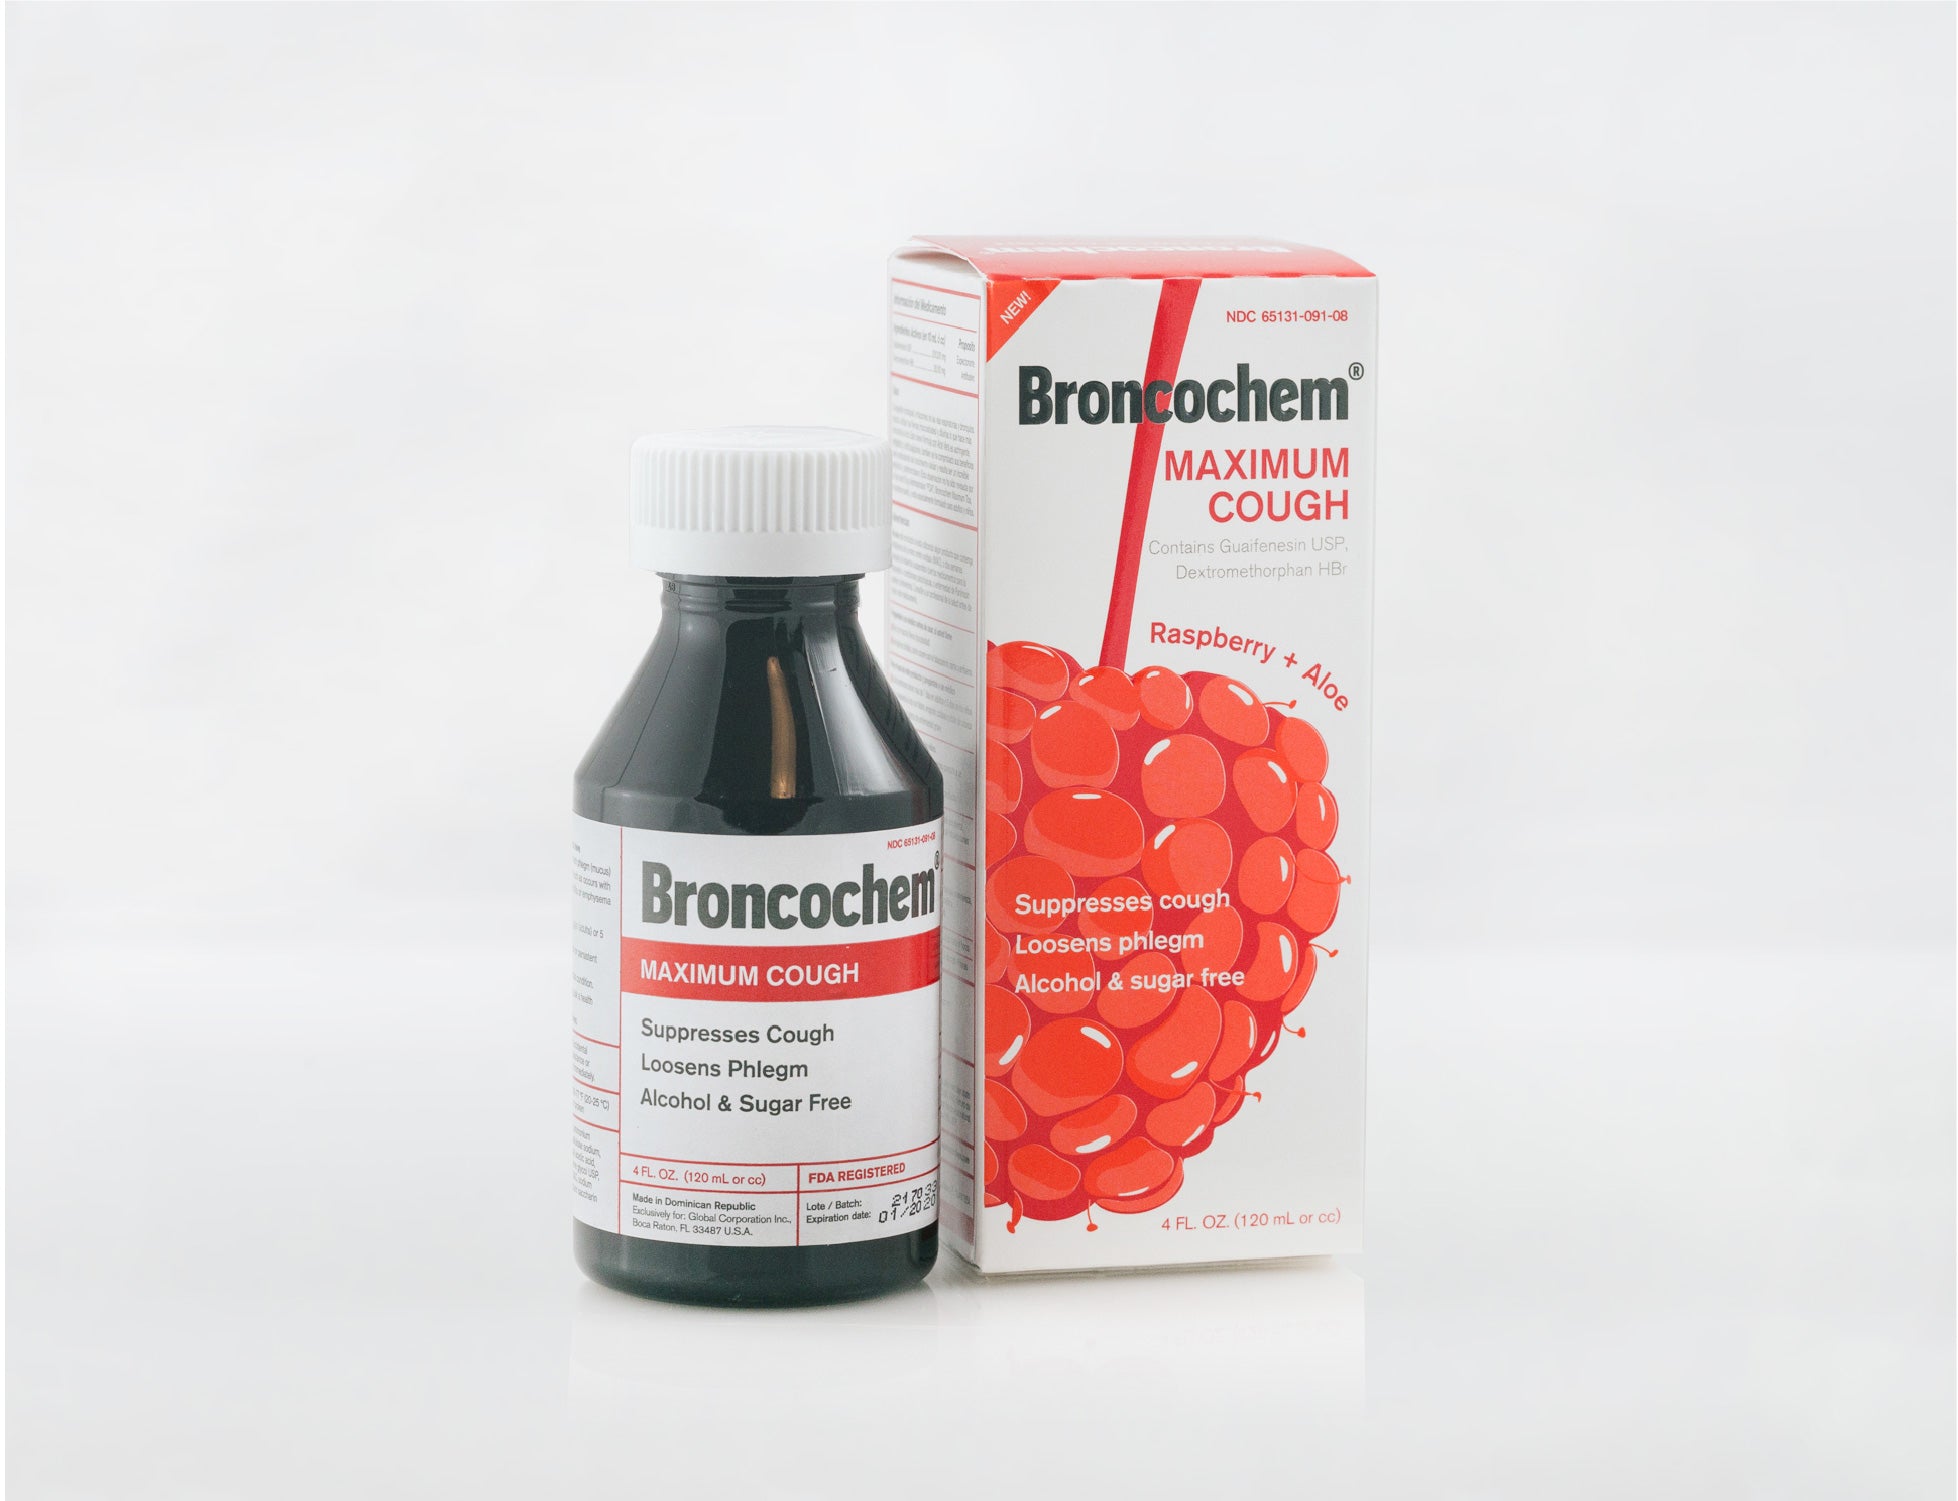 Broncochem Maximum Cough